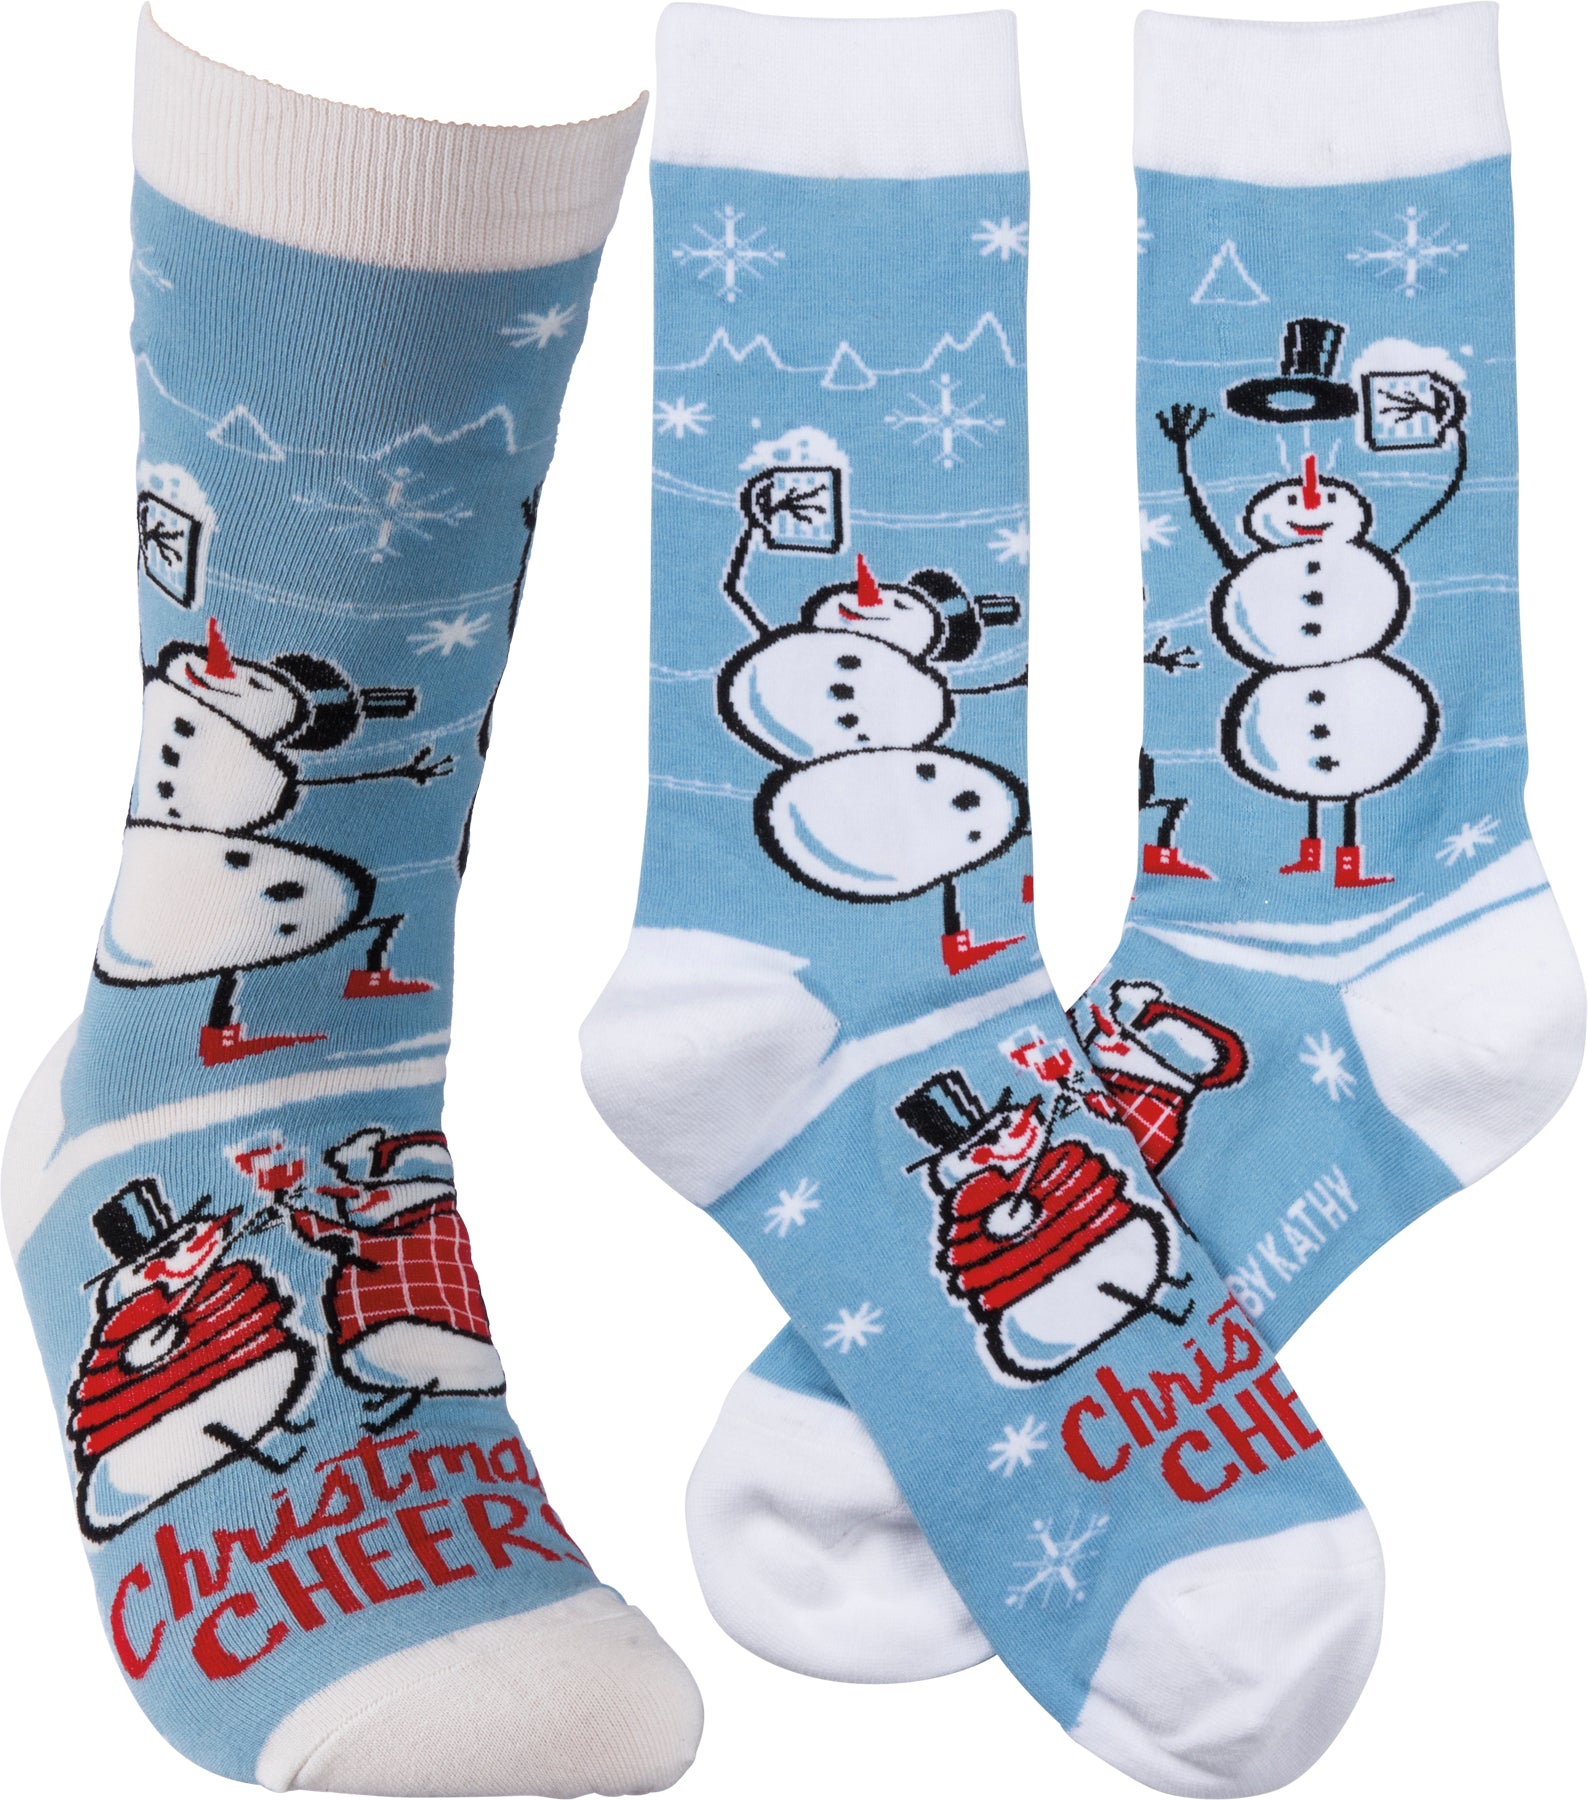 Christmas Cheer Socks